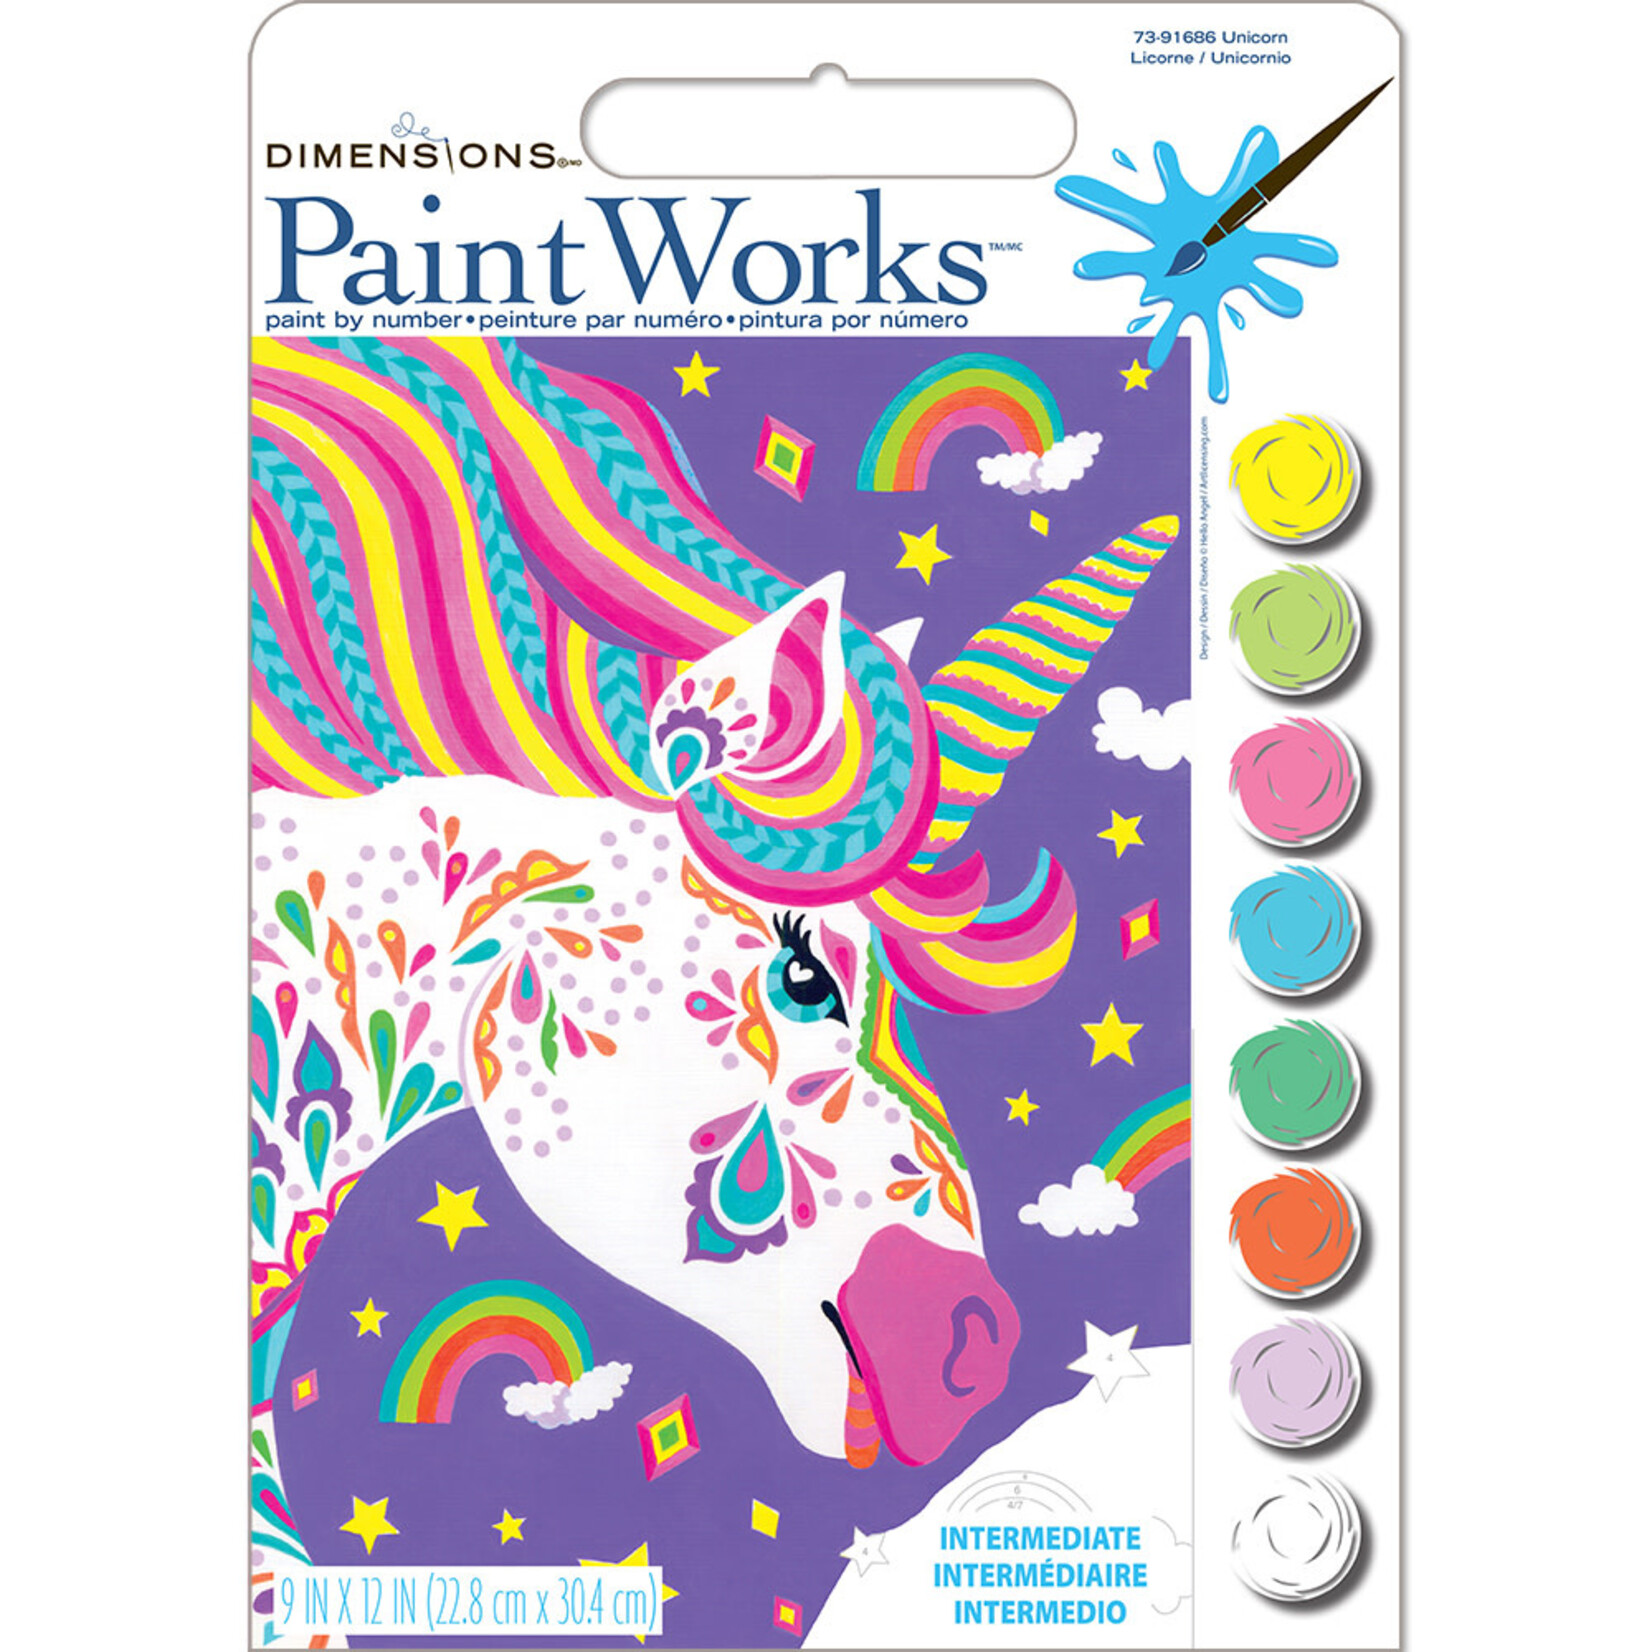 PaintWorks PaintWorks Débutant (9 x 12)Licorne